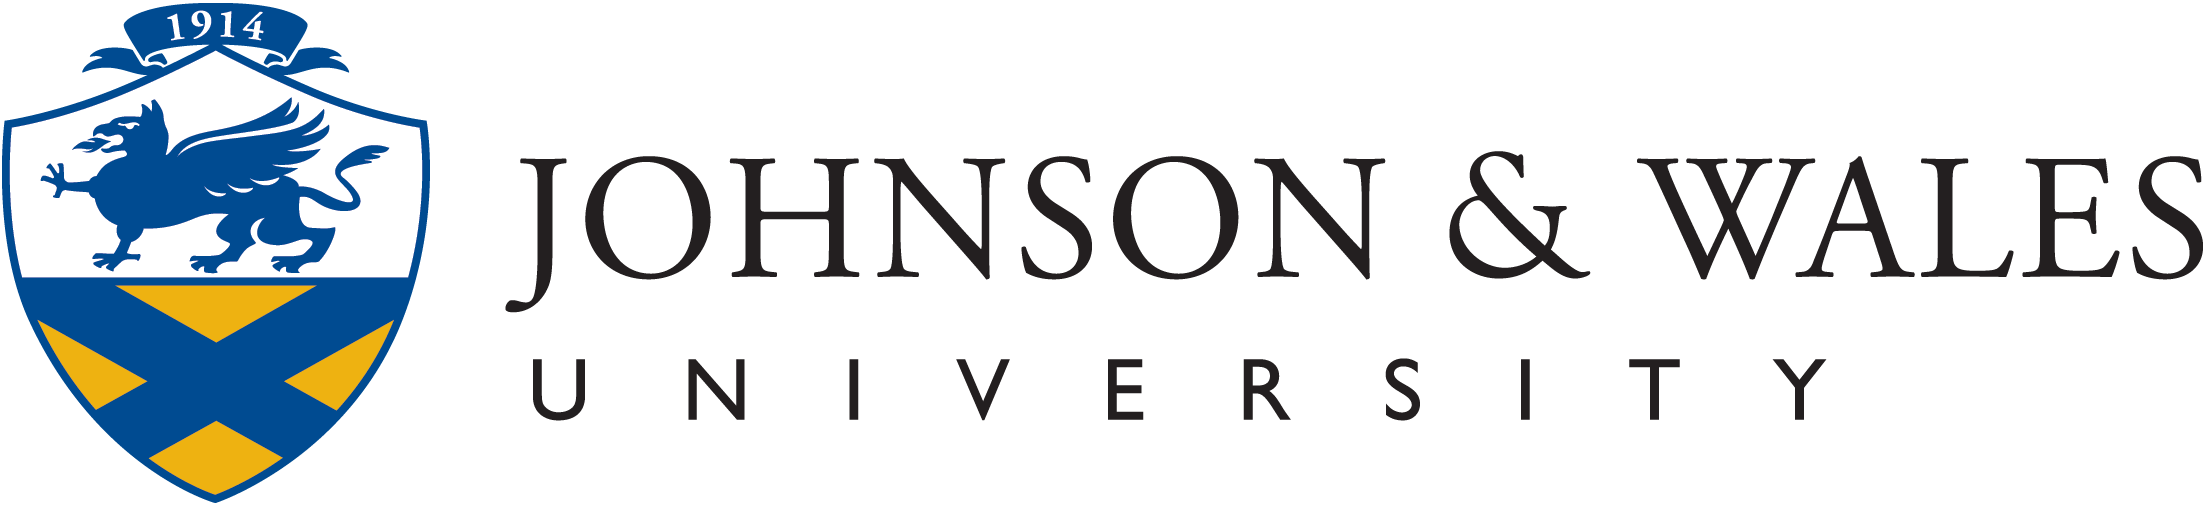 johnson-wales-university.gif